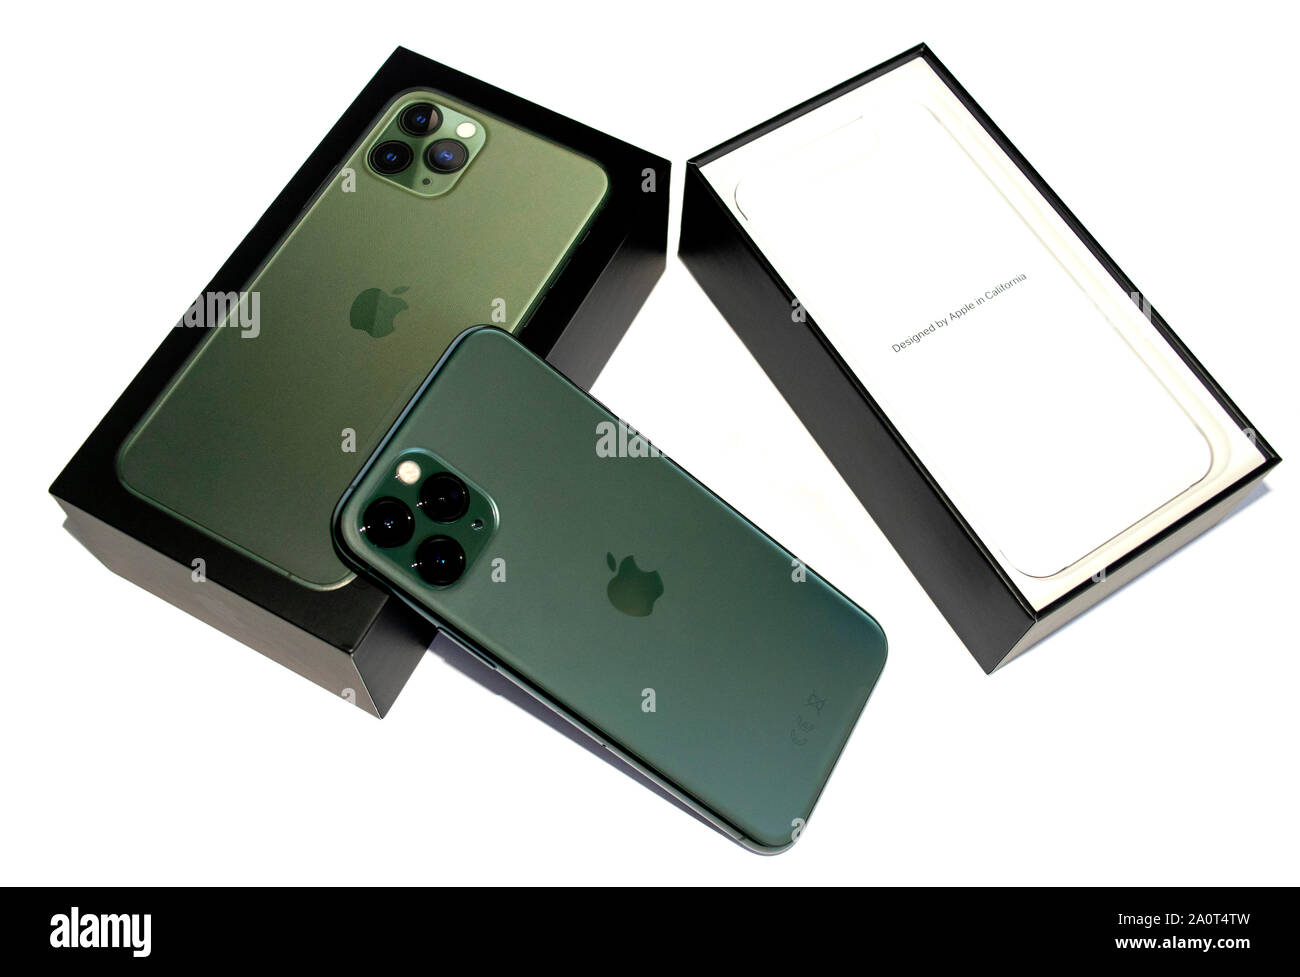 Dubai / Emirati Arabi Uniti - 21 Settembre 2019: Nuova mezzanotte Green  Apple Iphone 11 Pro nella sua scatola originale isolato su sfondo bianco.  Apple iphone 11 pro Foto stock - Alamy